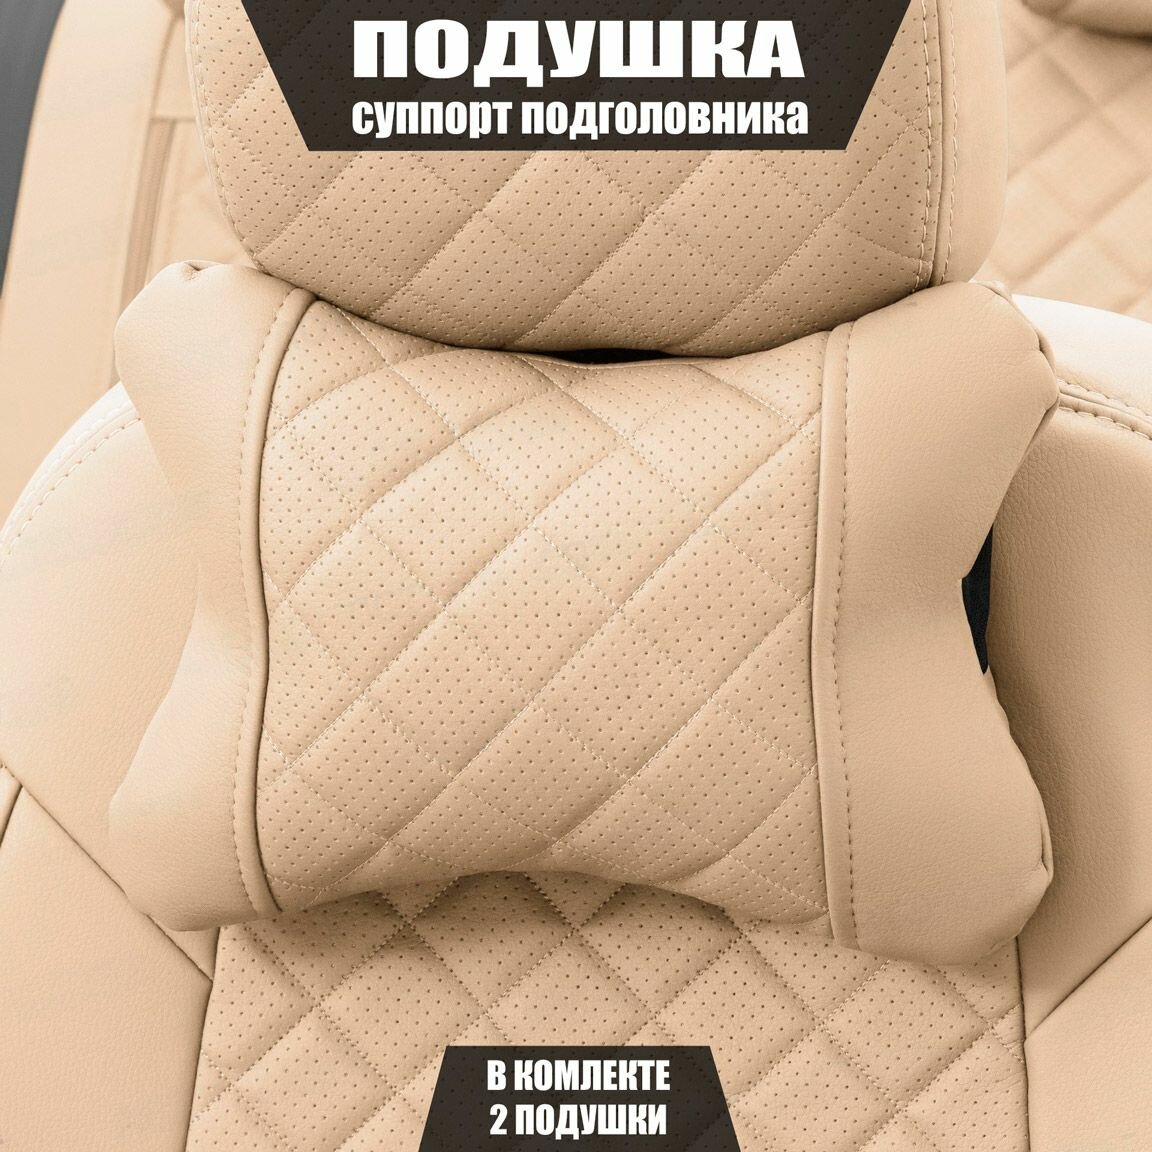 Подушки под шею (суппорт подголовника) для Вольво в40 (2016 - 2019) хэтчбек 5 дверей / Volvo V40, Ромб, Экокожа, 2 подушки, Бежевый